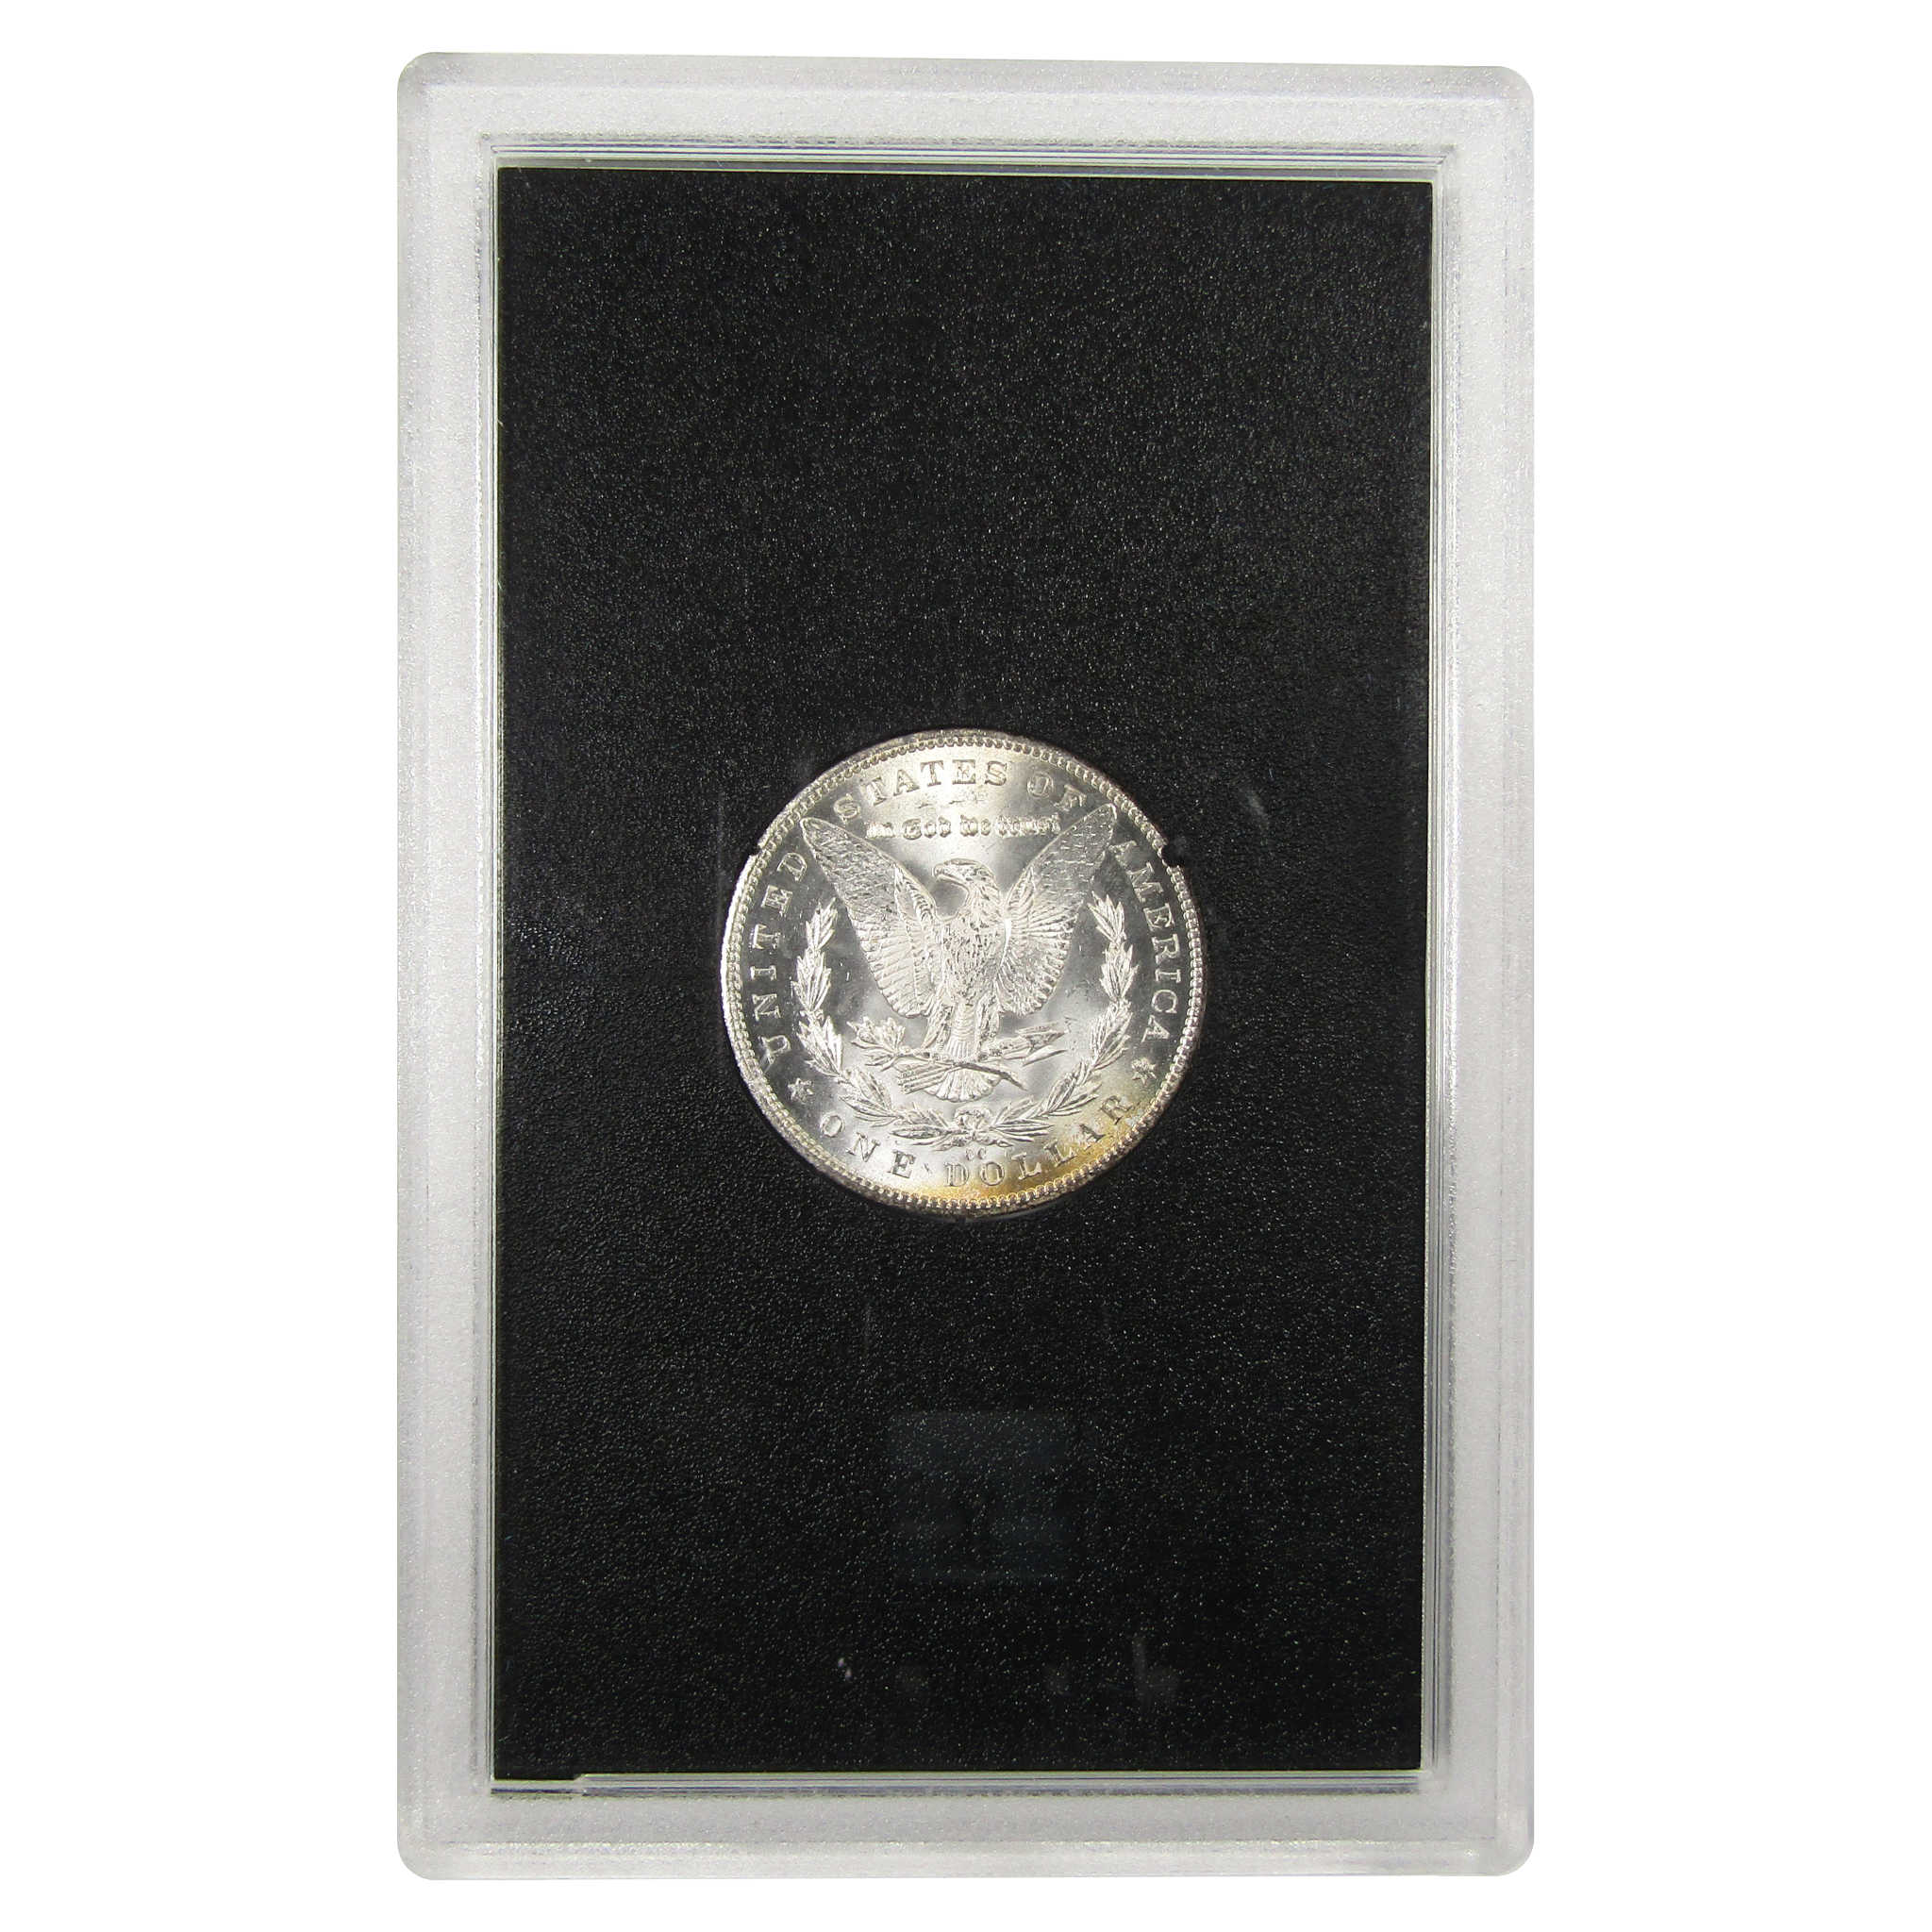 1884 CC GSA Morgan Dollar BU Uncirculated Silver $1 Coin SKU:I9857 - Morgan coin - Morgan silver dollar - Morgan silver dollar for sale - Profile Coins &amp; Collectibles